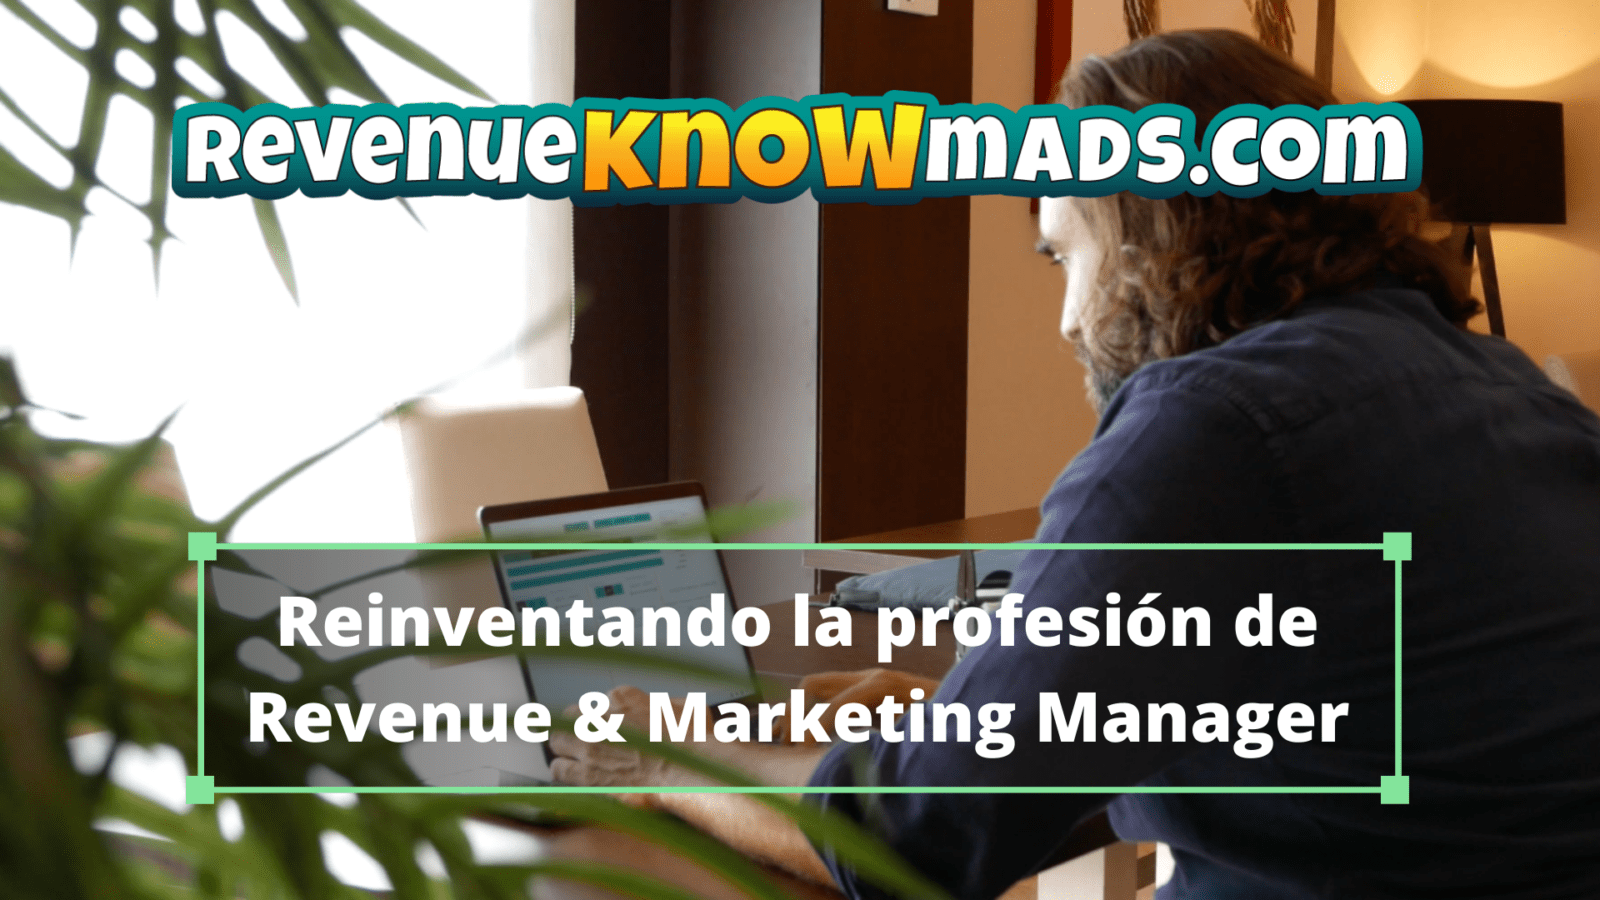 RevenueKnowmads - Reinventando la profesión de Revenue & Marketing Manager